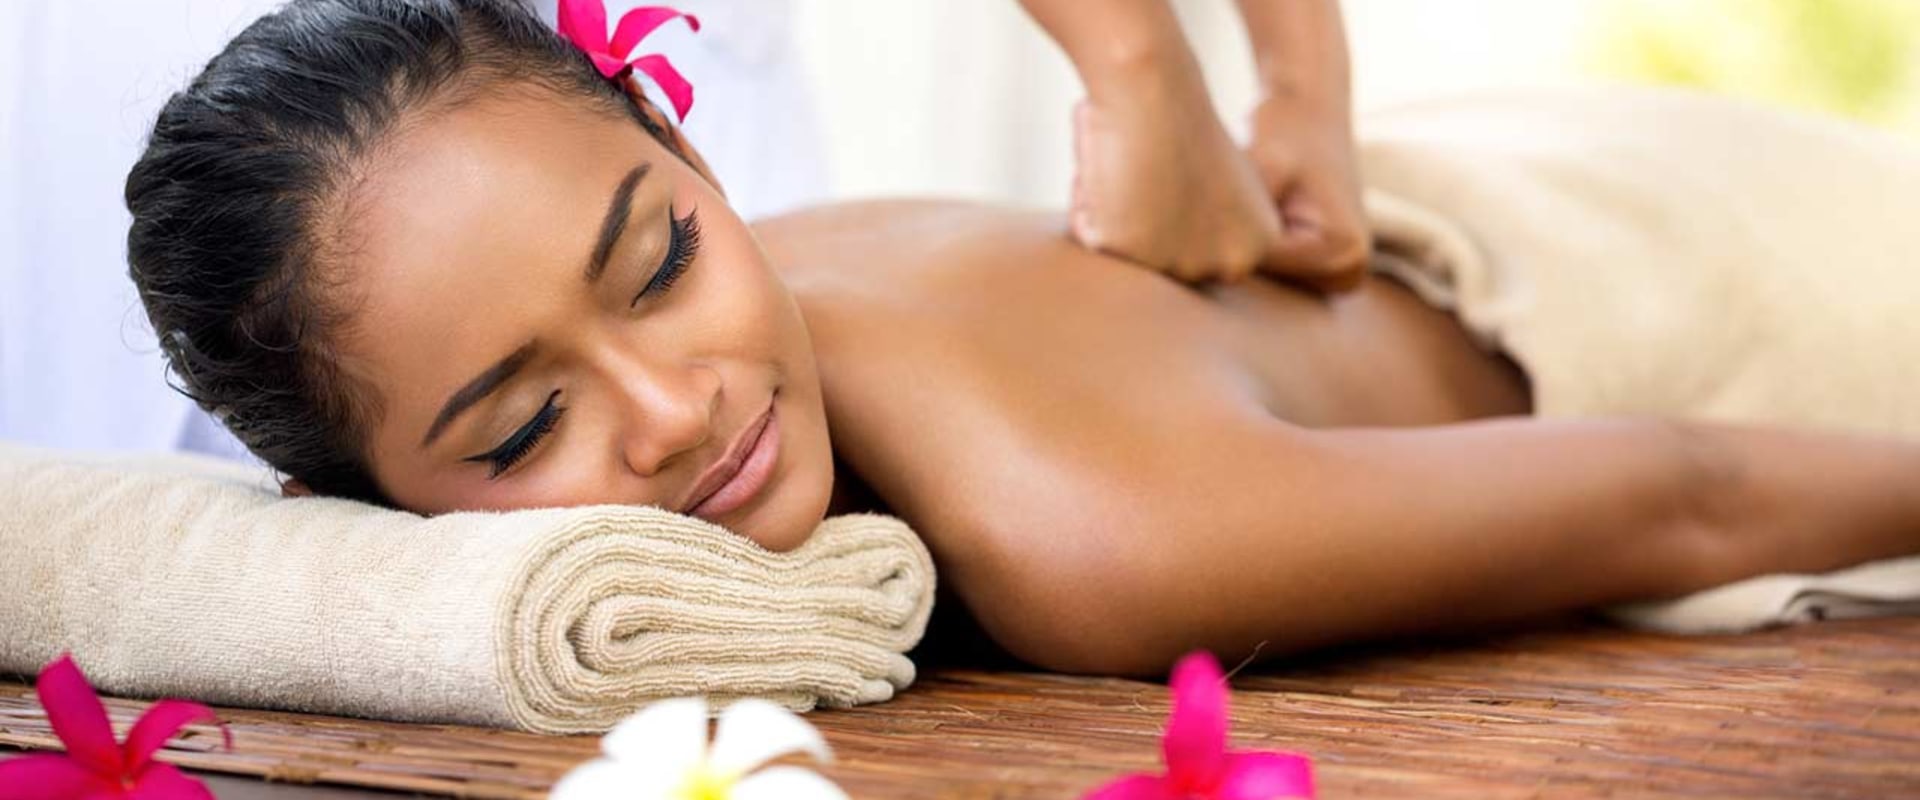 Was ist der unterschied zwischen einer thai-massage und einer normalen massage?